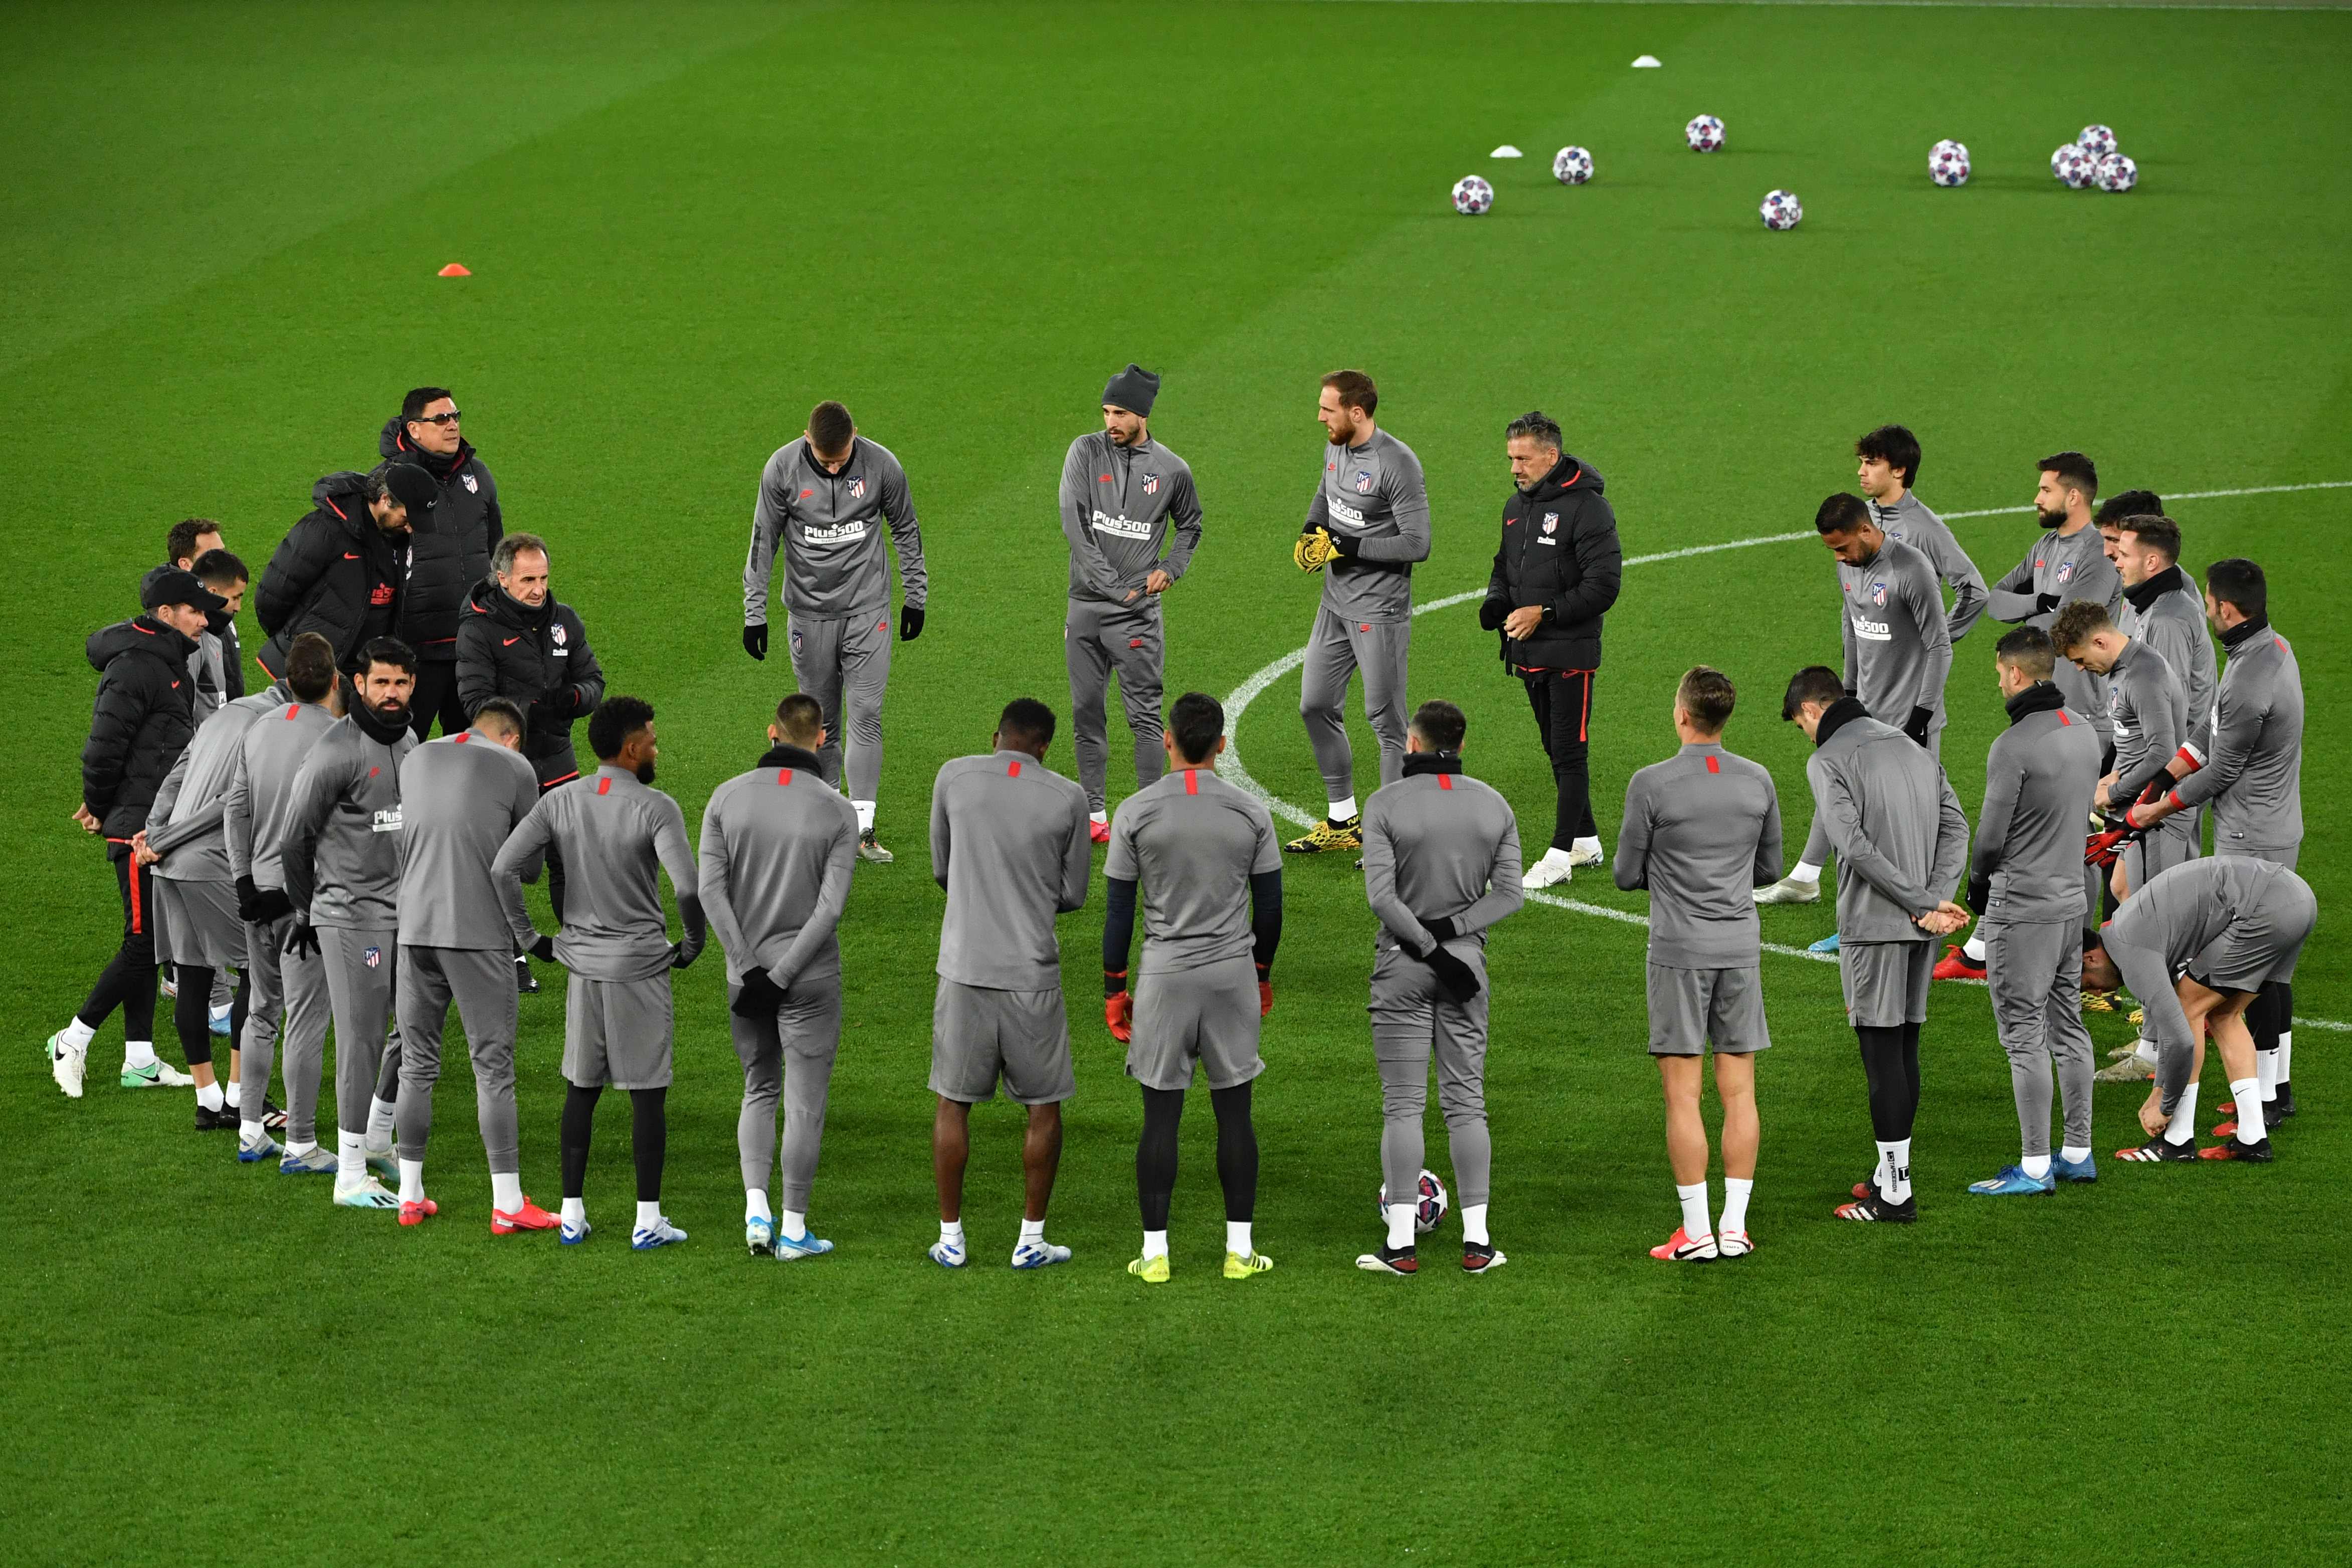 Jugadores del Atlético Madrid se preparan para el juego contra el Liverpool. (Foto Prensa Libre: AFP)